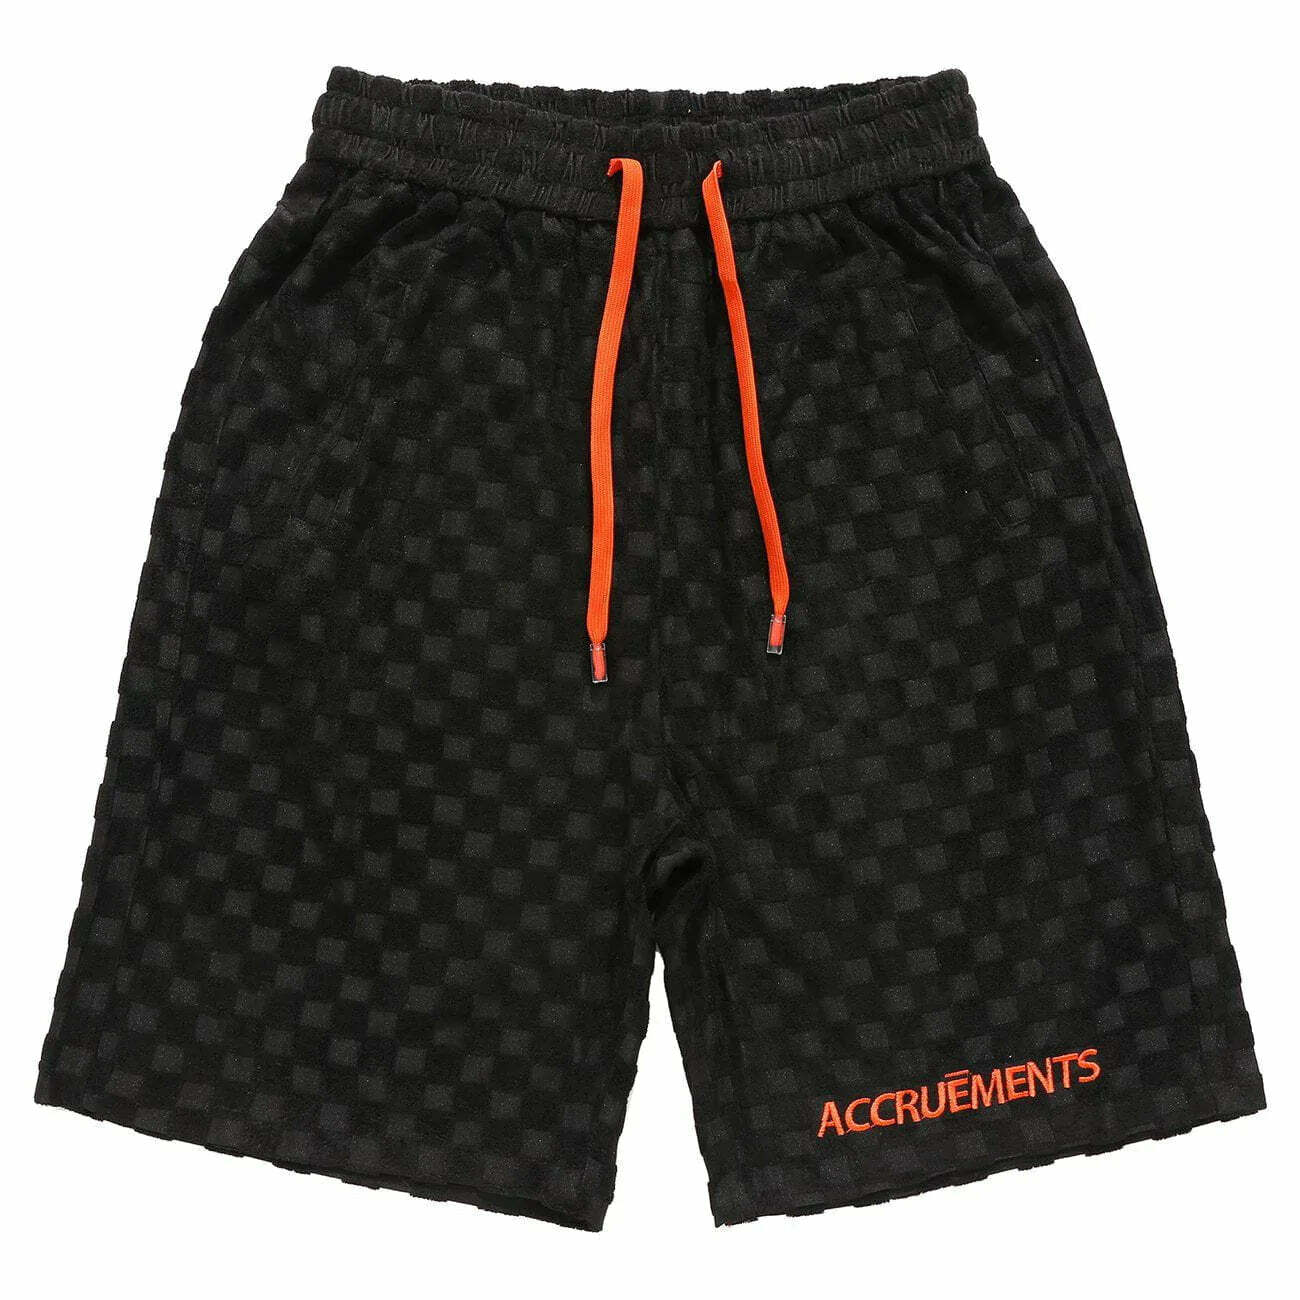 checkered drawstring shorts edgy & comfortable streetwear 5182